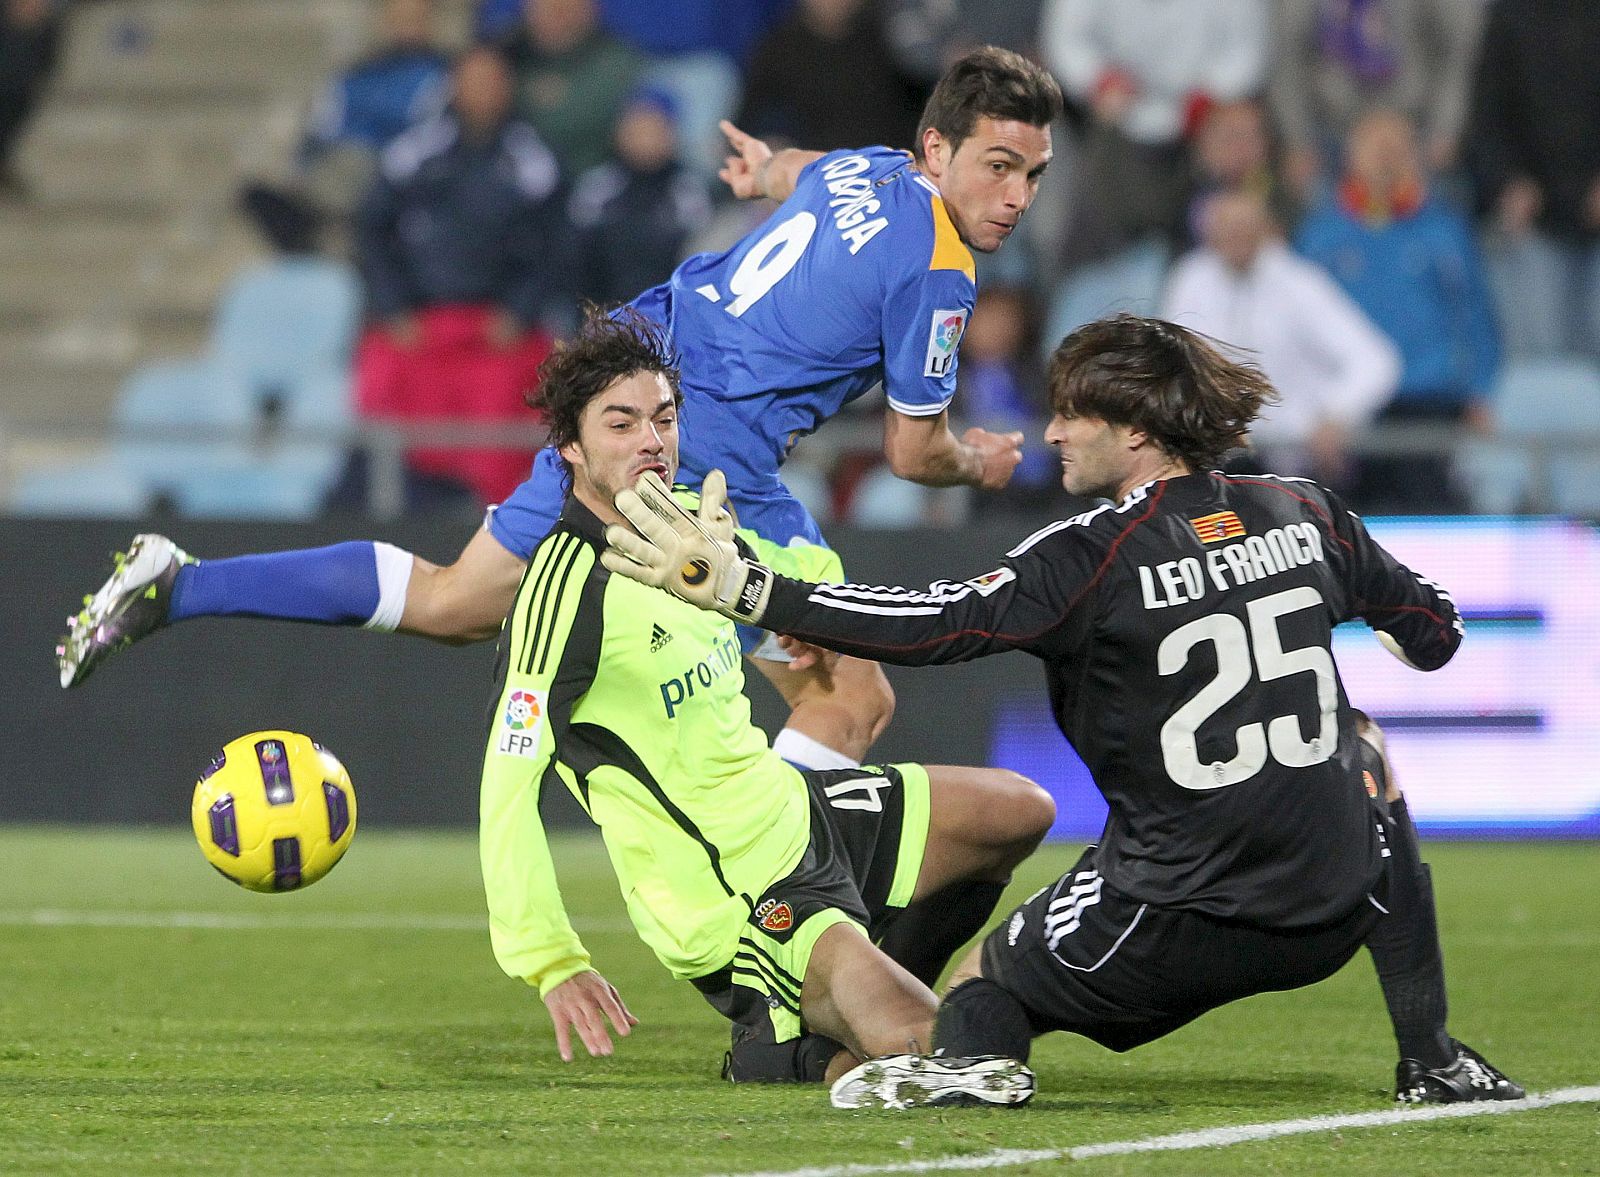 El jugador del Getafe, Colunga (c), dispara a puerta ante el guardameta argentino del Real Zaragoza, Leo Franco